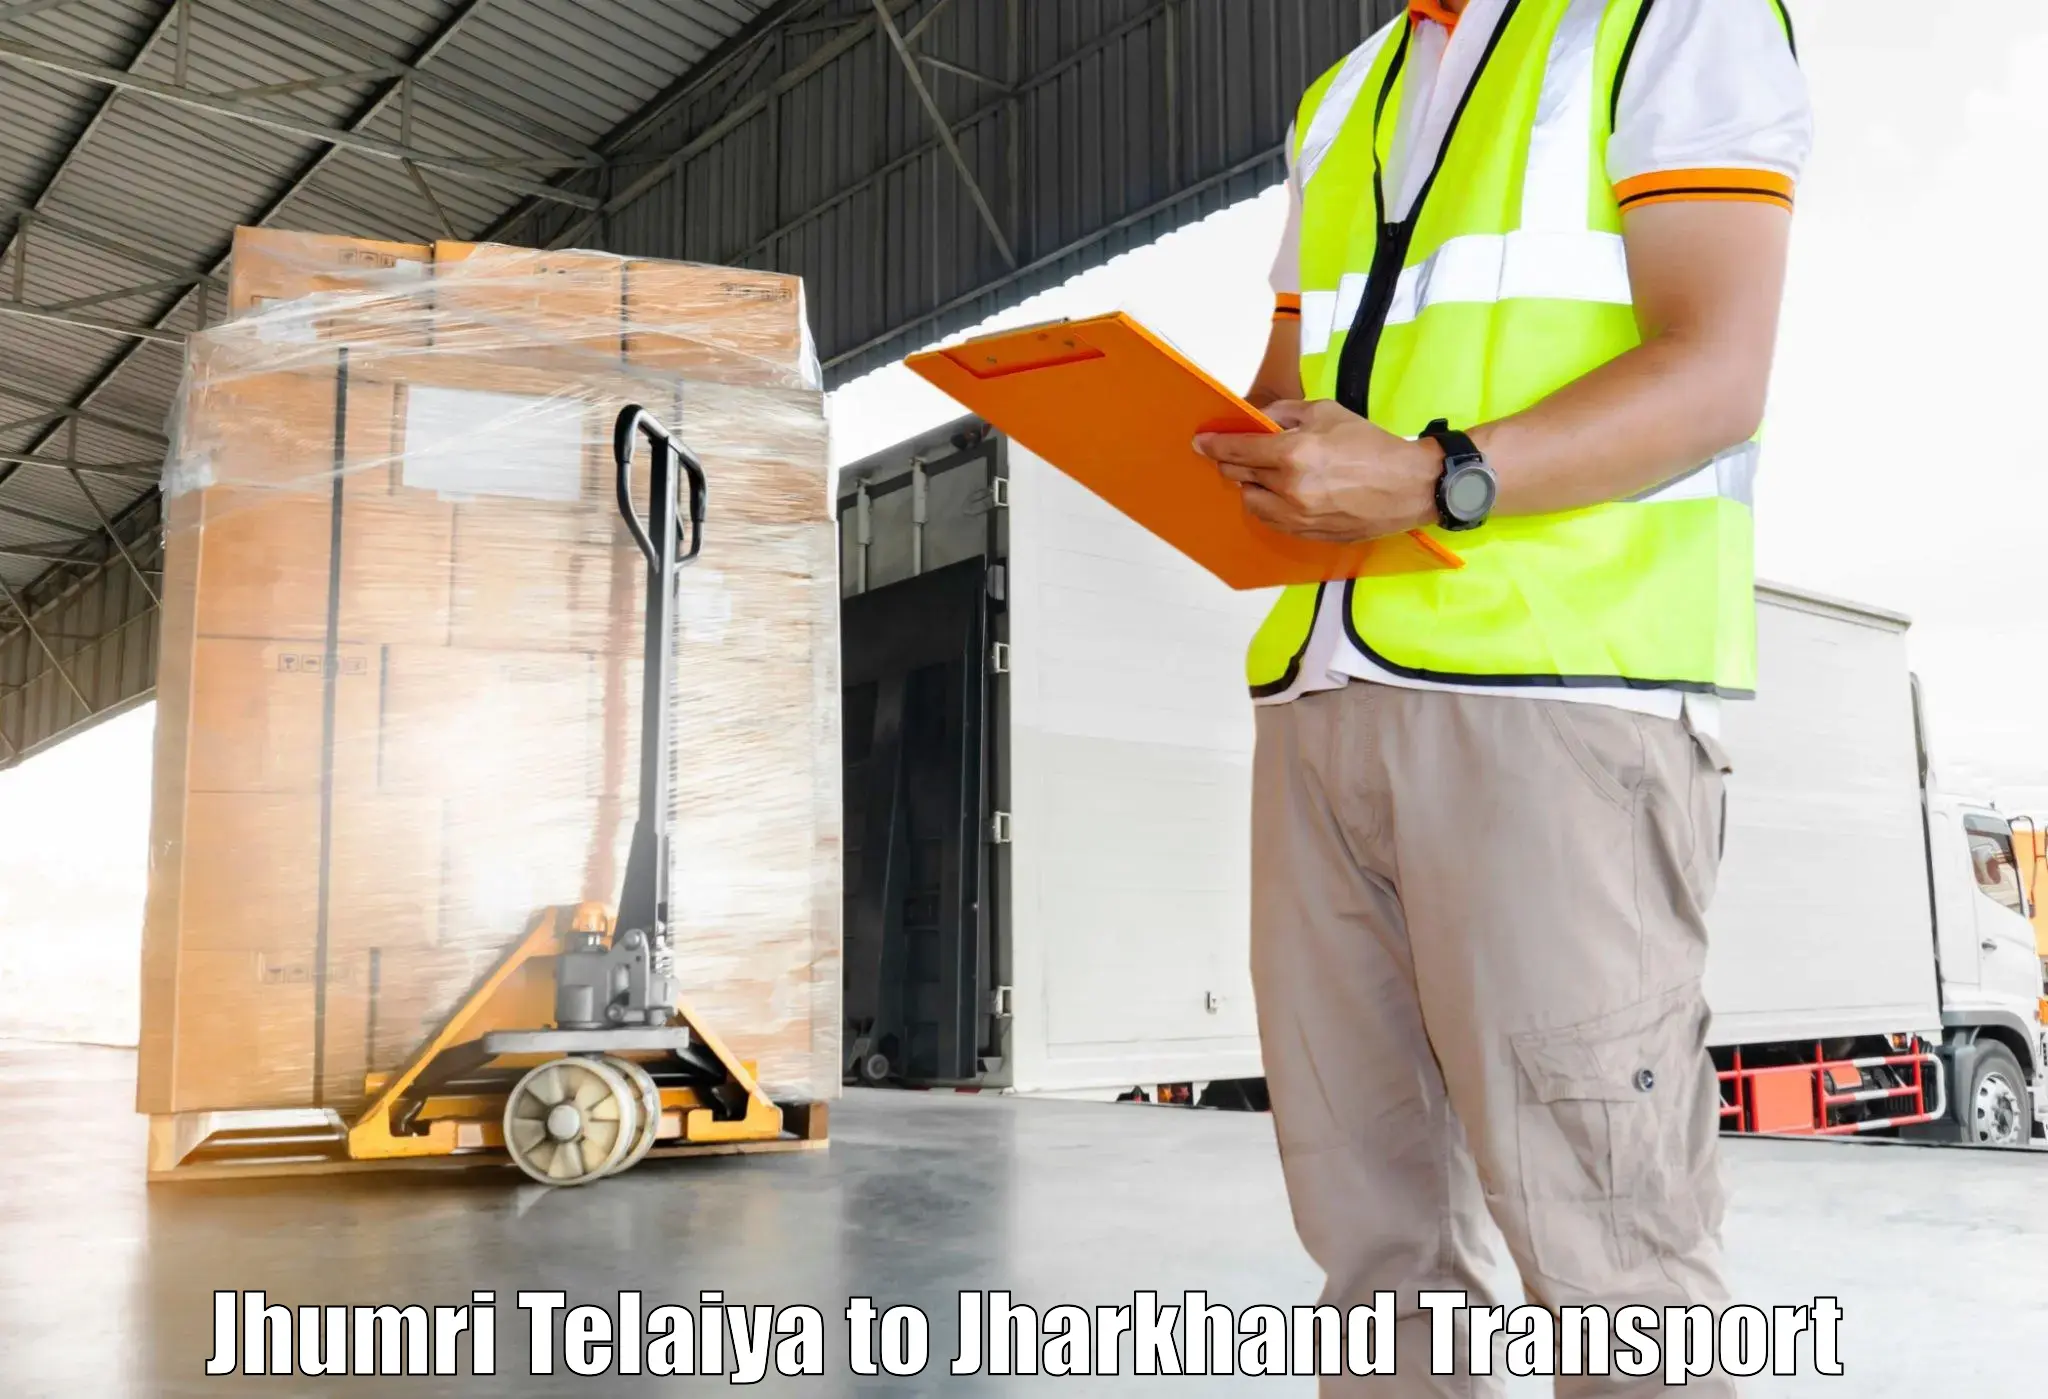 Package delivery services Jhumri Telaiya to Jhumri Telaiya